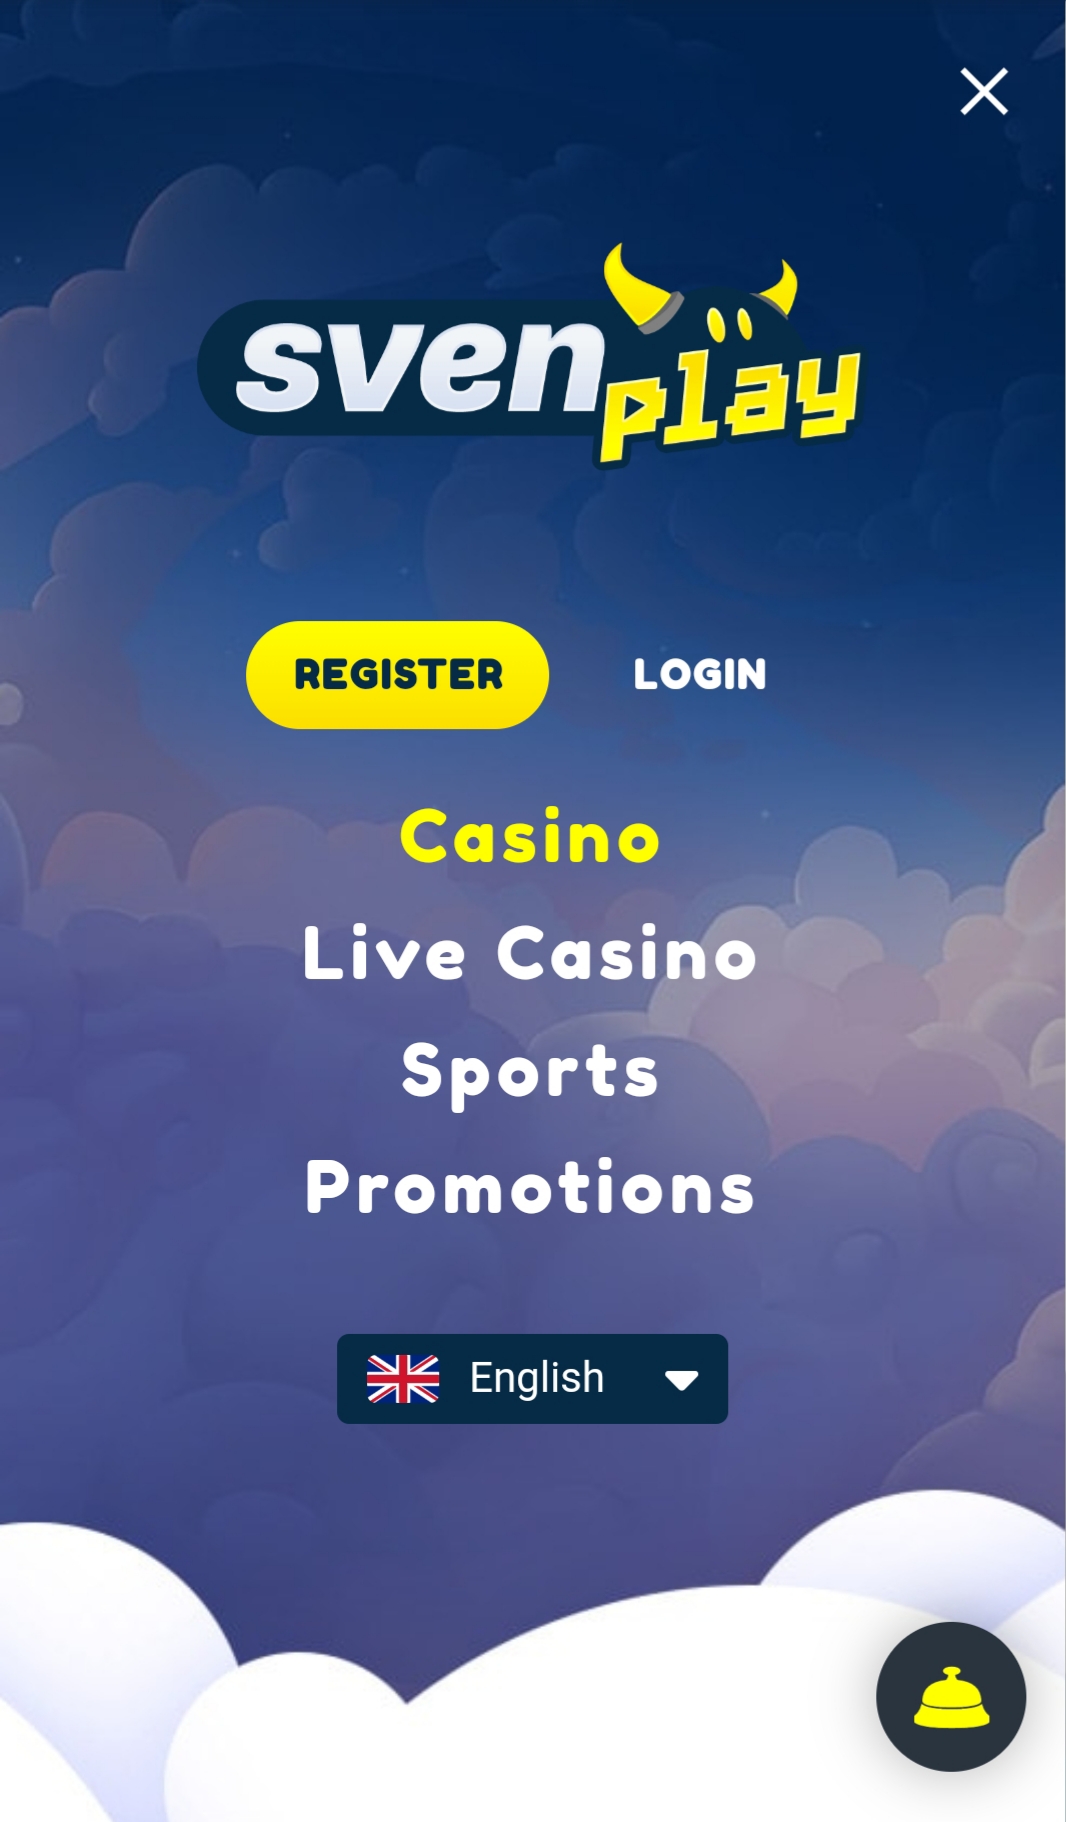 SvenPlay Casino Mobile Login Review